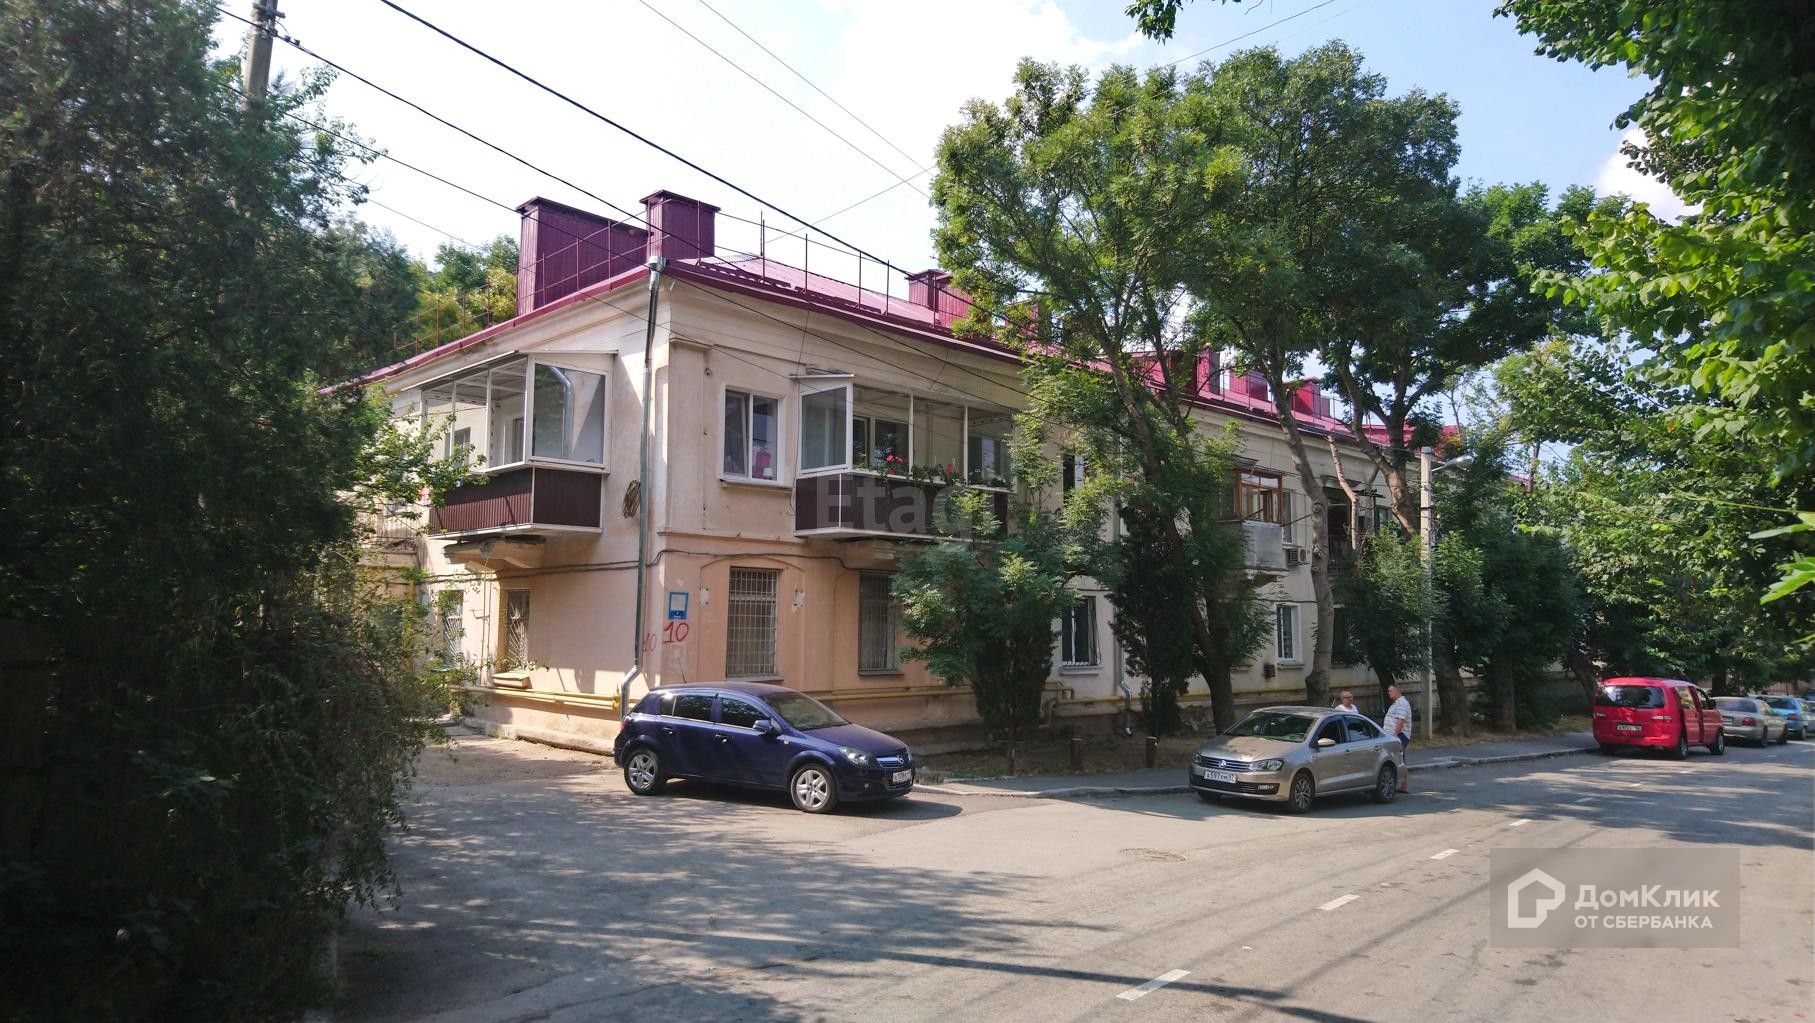 г. Севастополь, ул. Терлецкого, д. 10 - фасад здания